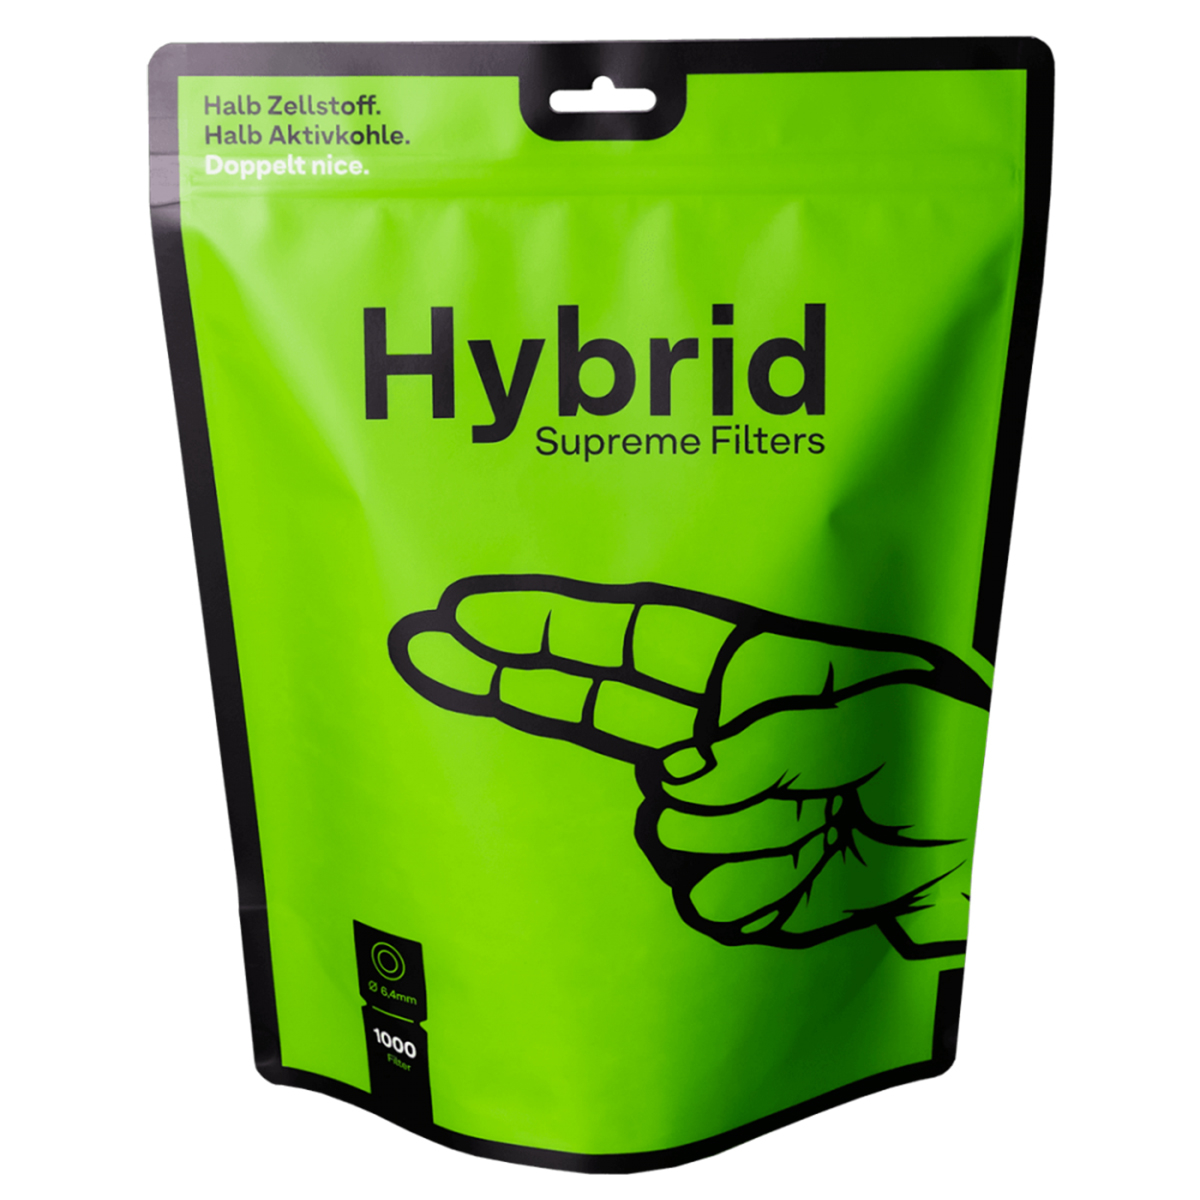 Hybrid Supreme Filter 6.4mm 1000 Filter Pack